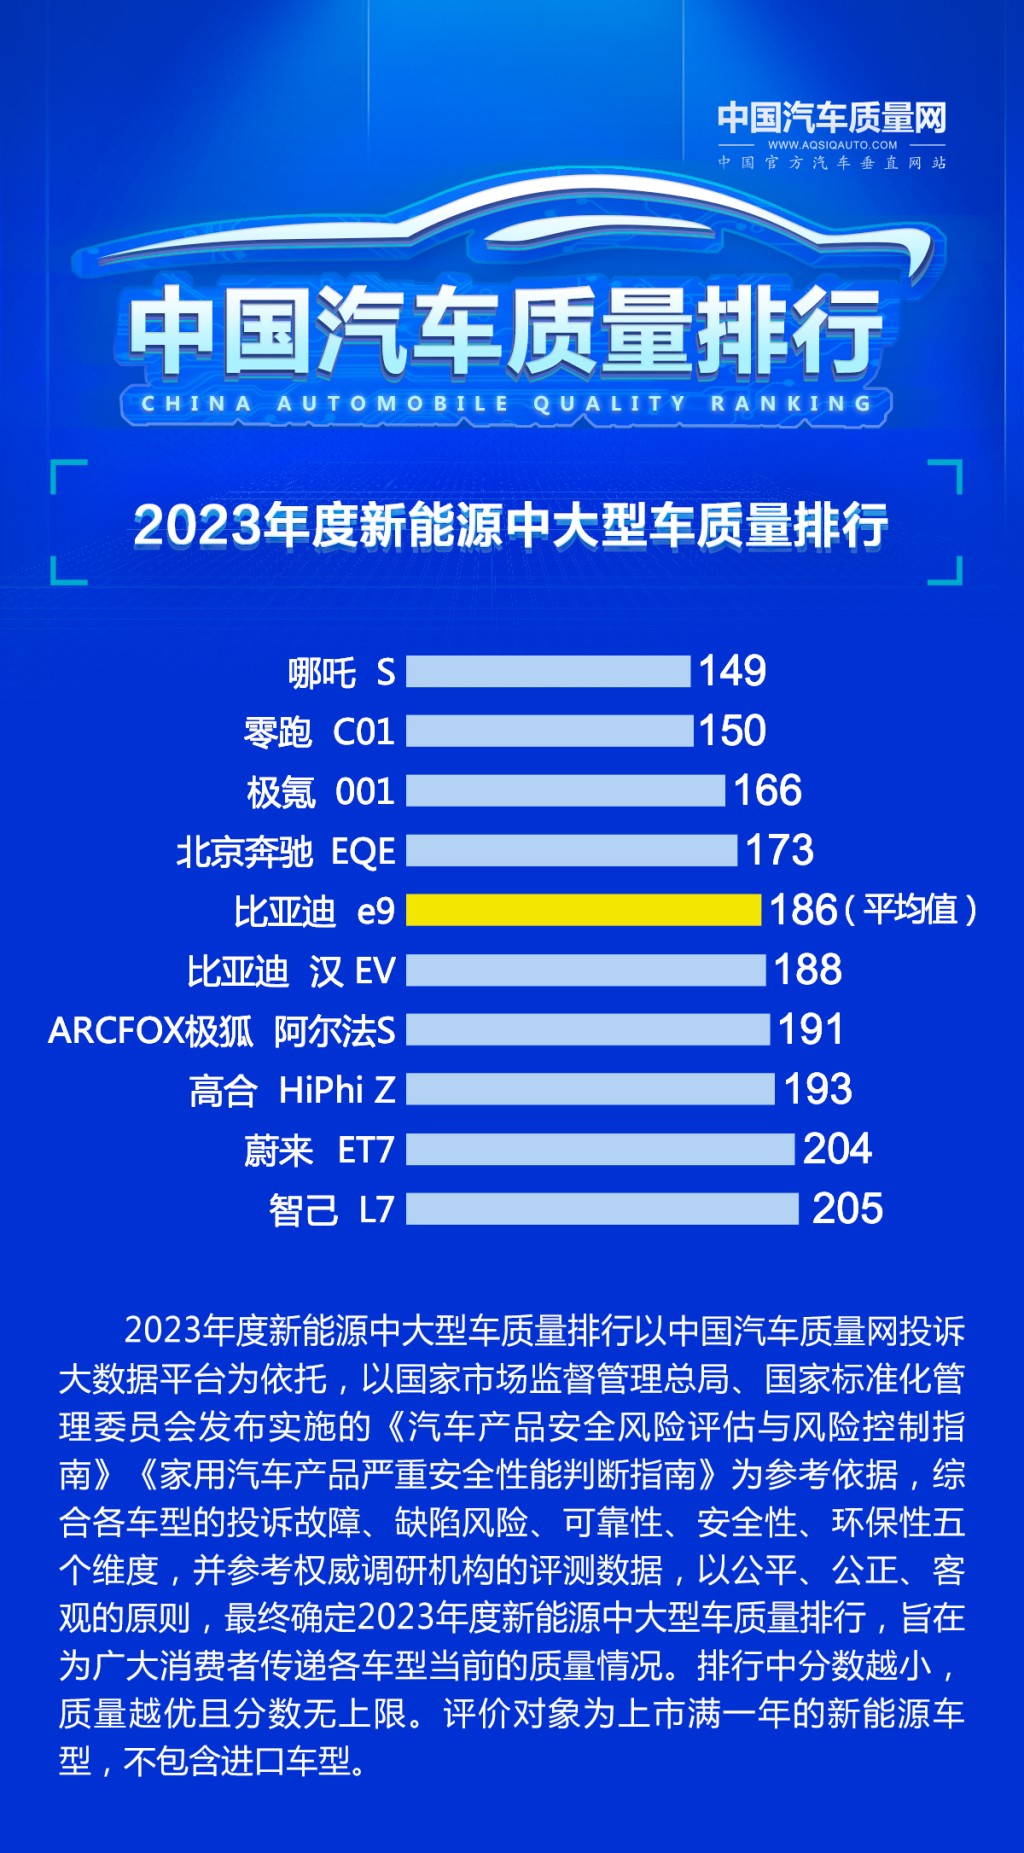 中国汽车质量网中大型车辆排名